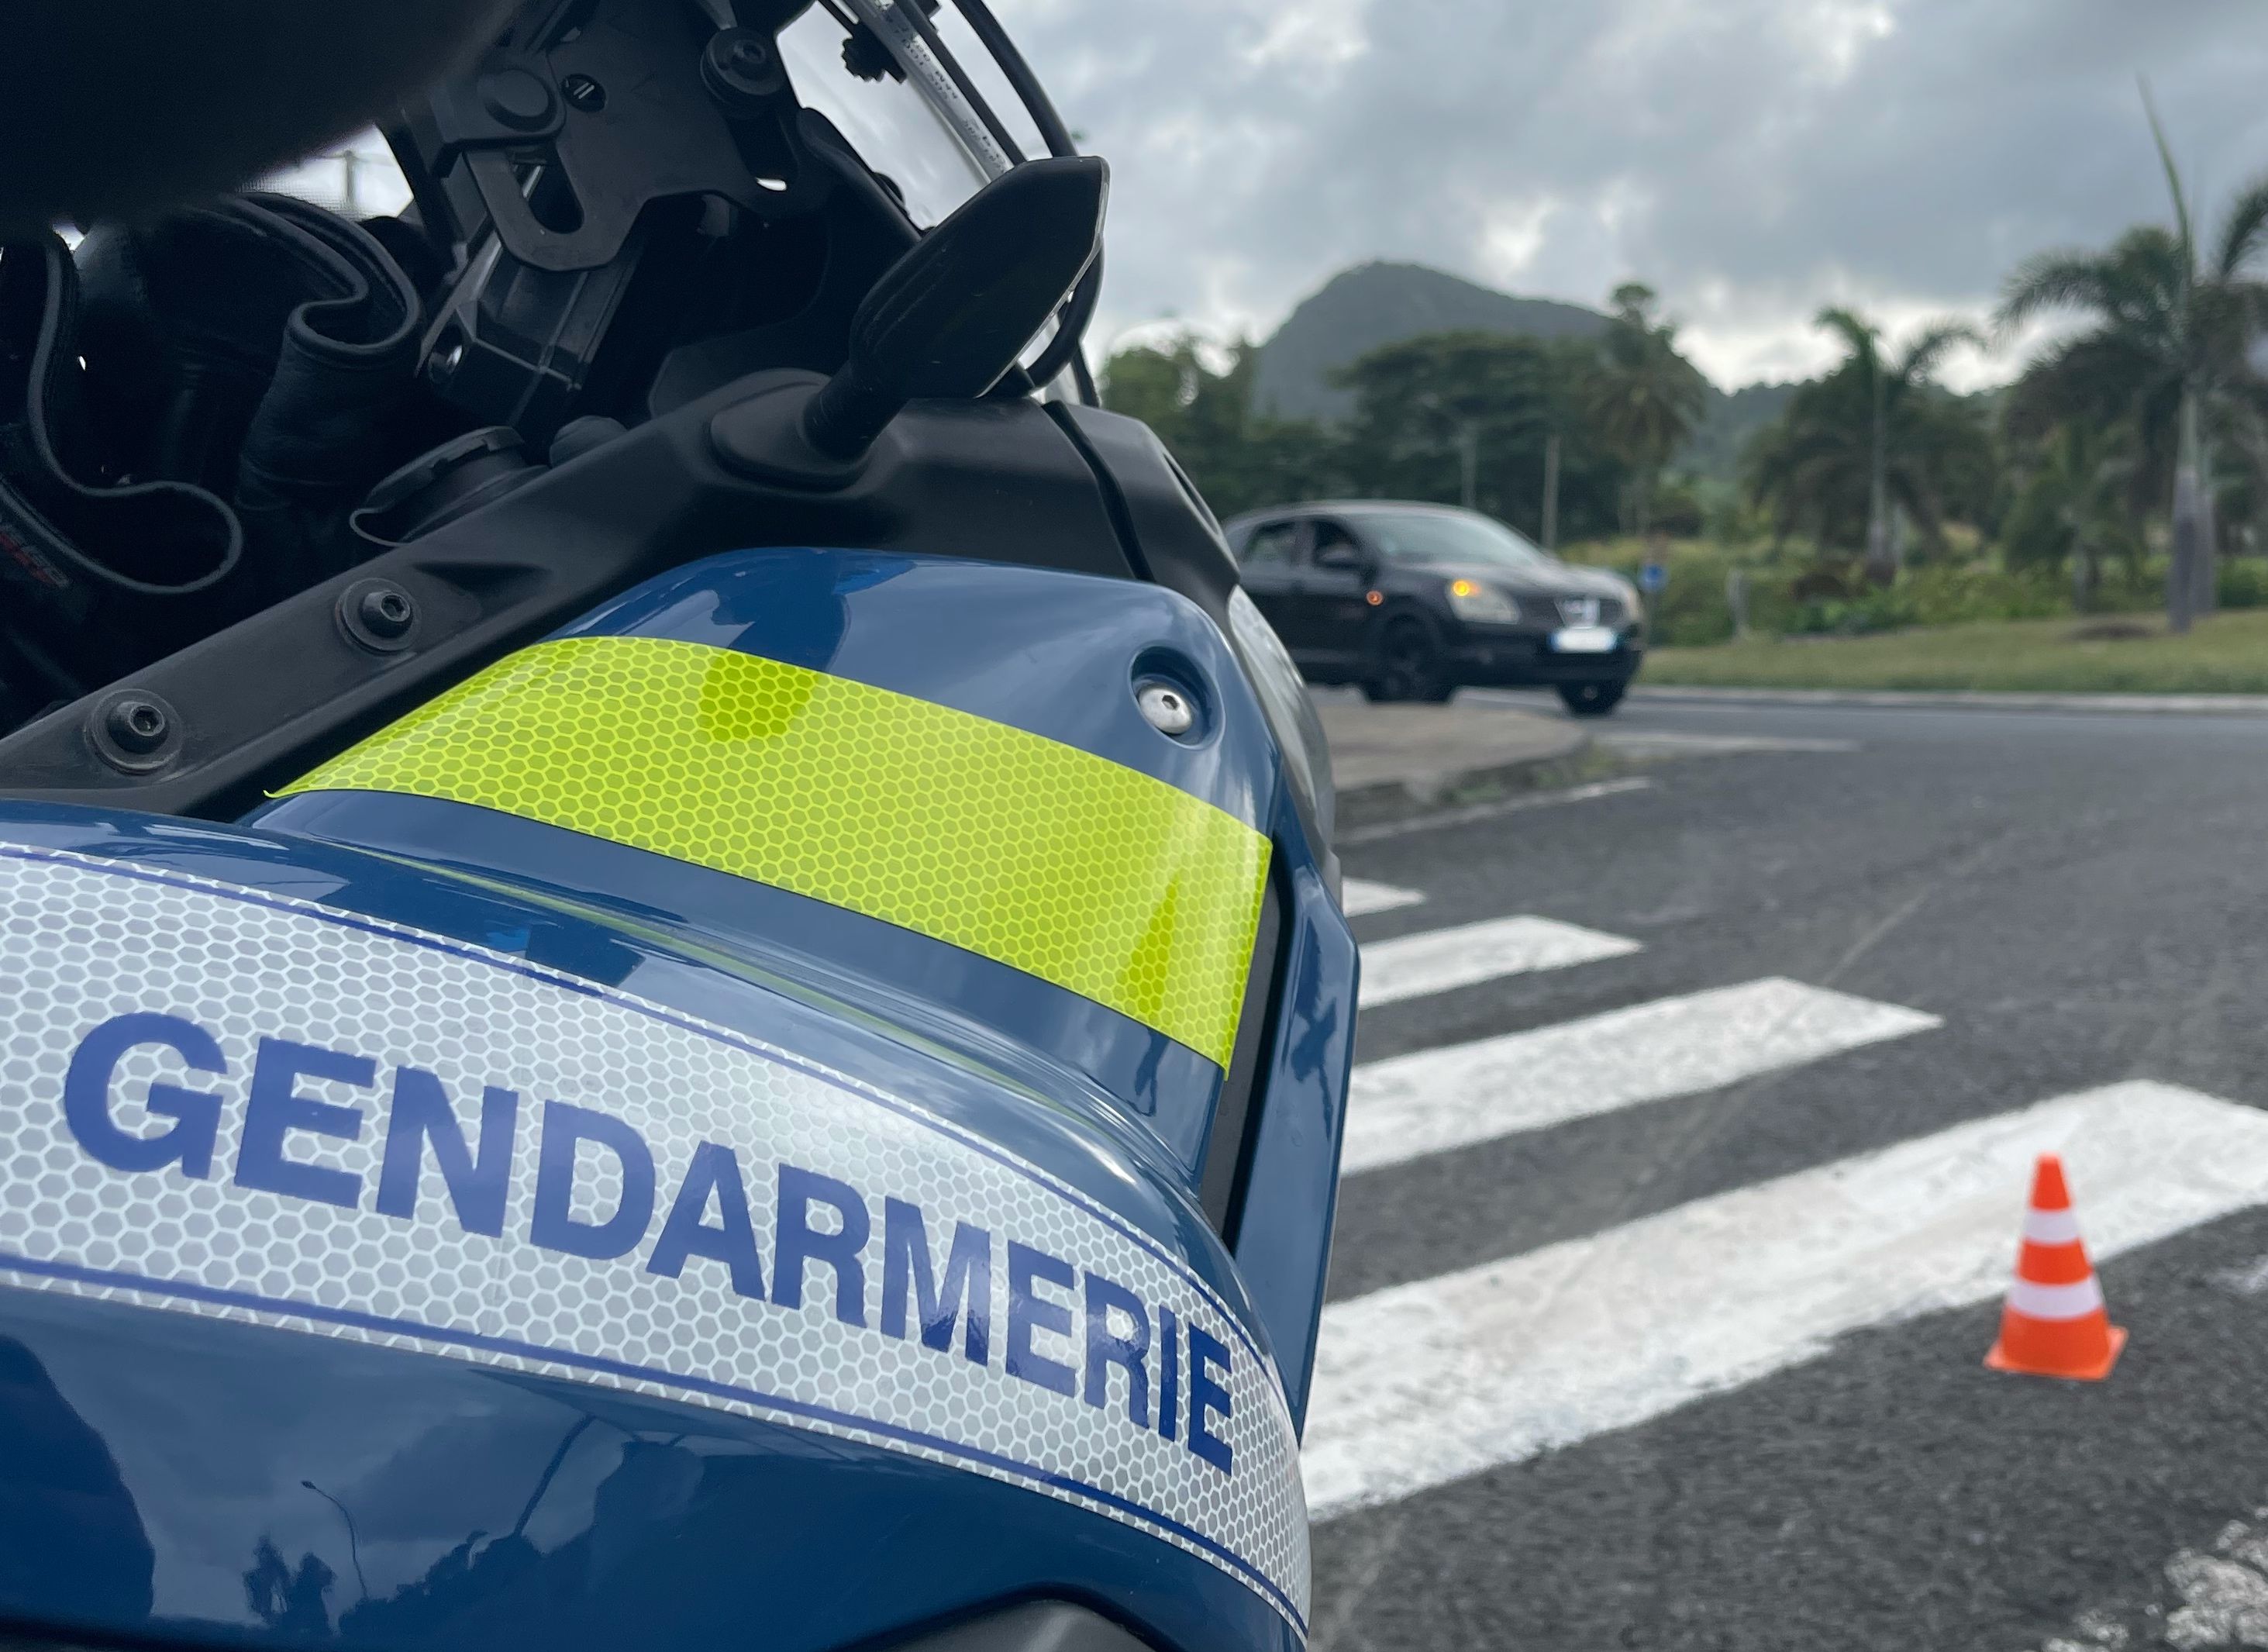     Plus de 700 infractions routières constatées en Martinique en 5 jours

